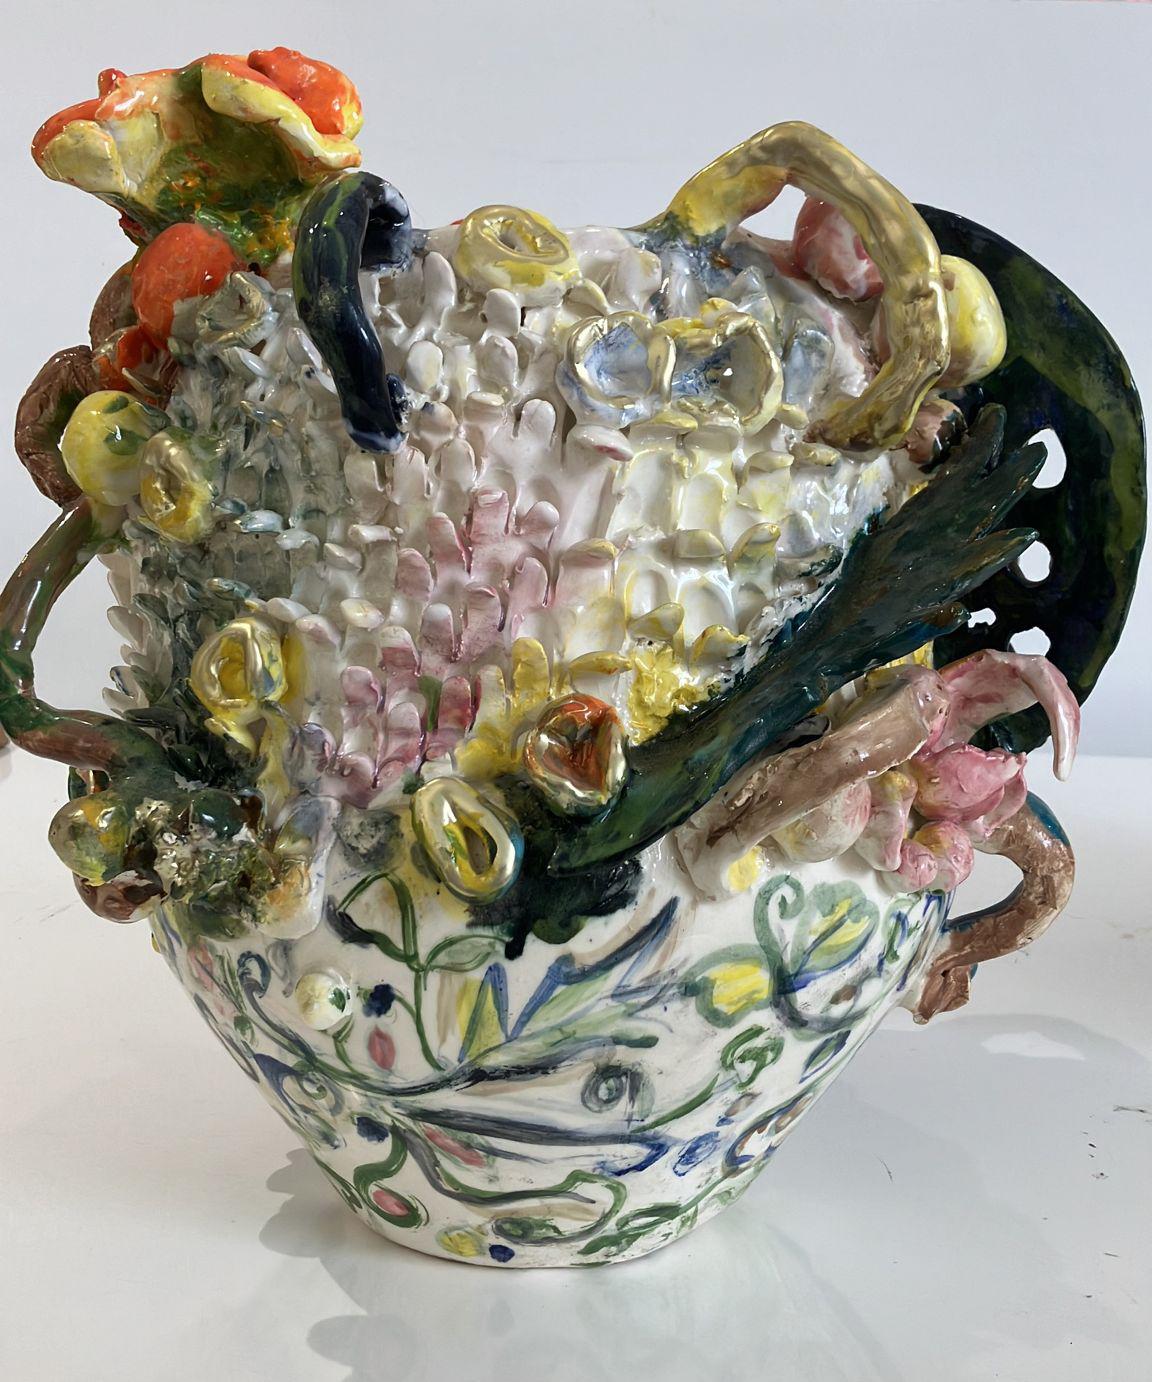 Grün wirbelt Blumen. Abstrakte glasierte Keramikglasur-Gefäßskulptur – Sculpture von Charo Oquet